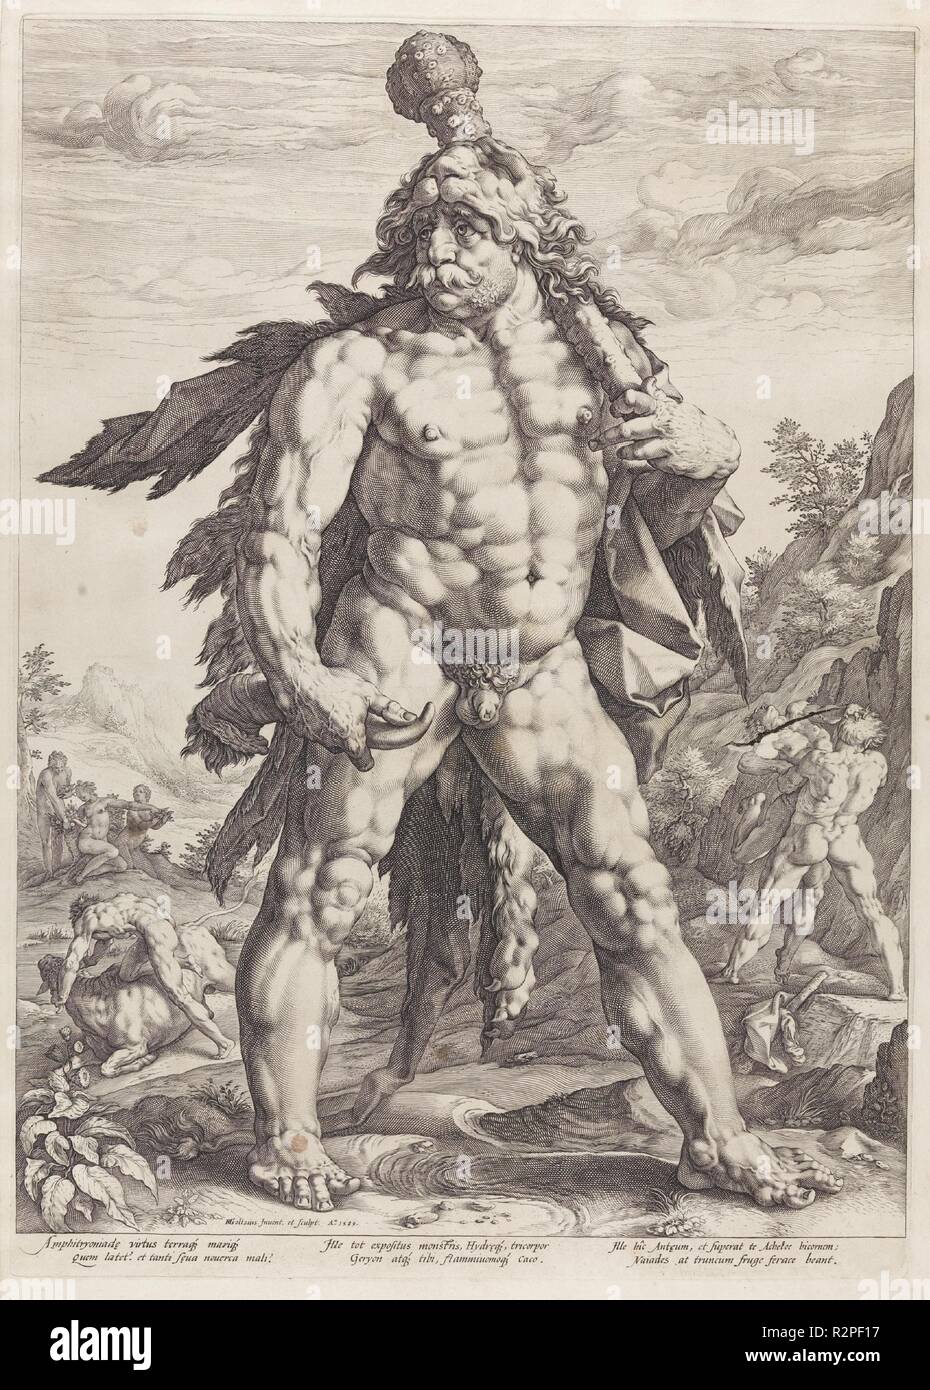 Heindrick Goltzius / 'Grande Hercules'. 1589. Burin su cui la carta. Museo : Museo del Prado di Madrid, España. Autore: GOLTZIUS, HEINDRICK. HENDRICK GOLTZIUS. Hendrik Goltzius. Foto Stock